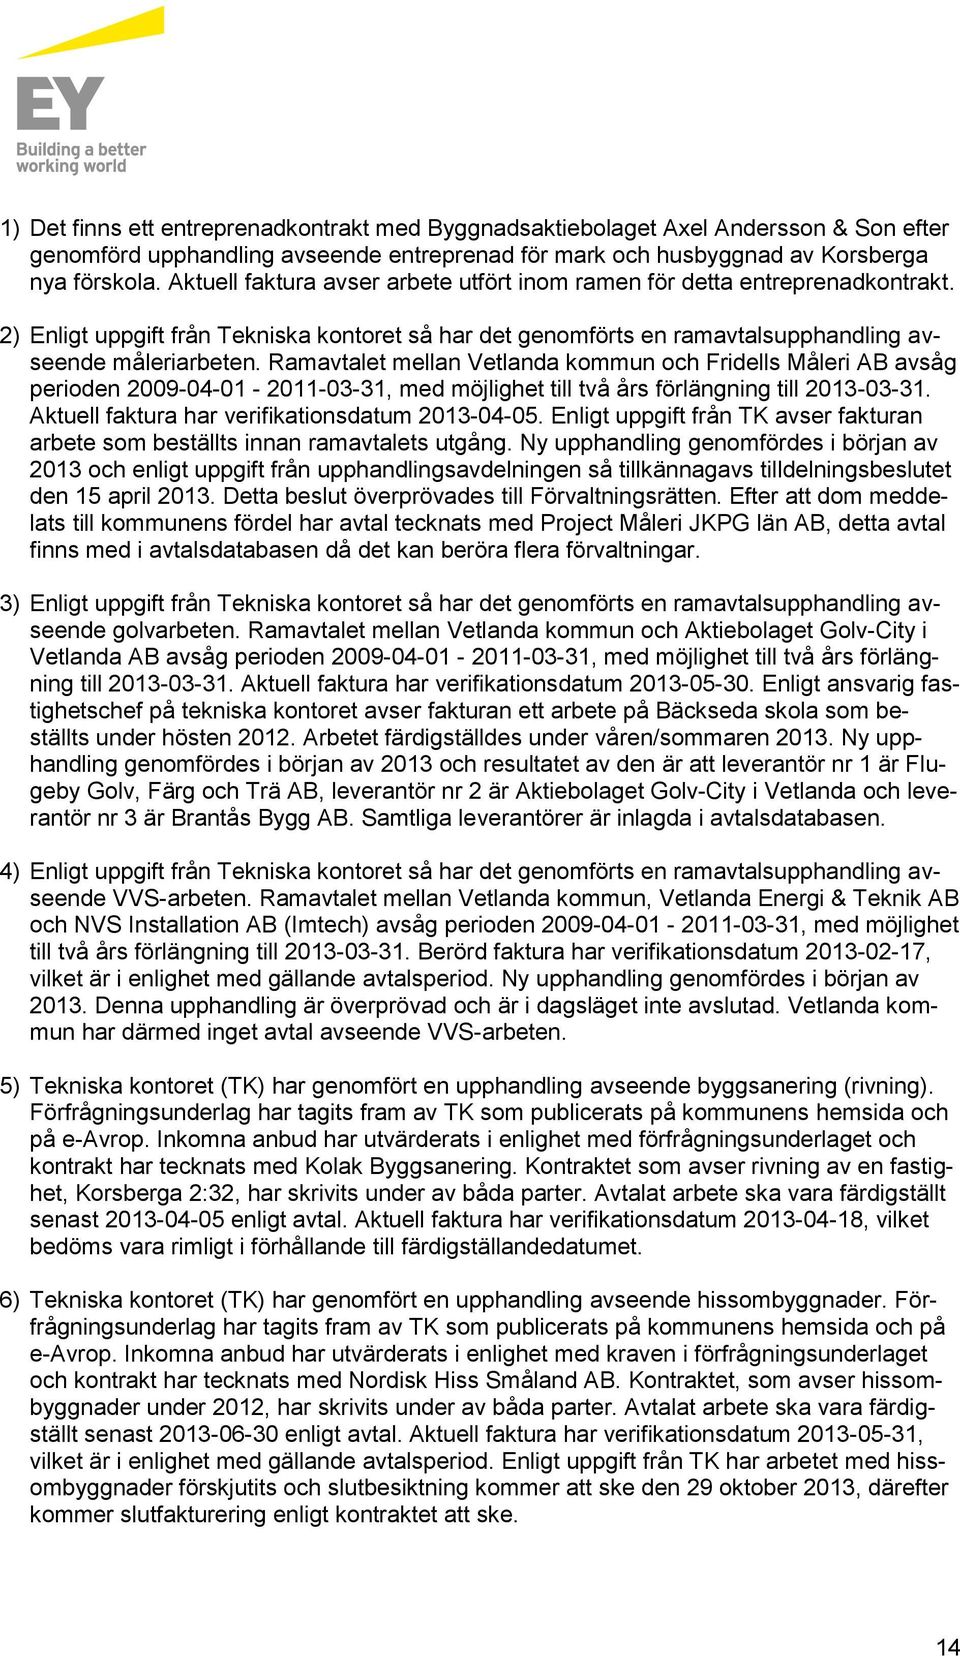 Ramavtalet mellan Vetlanda kommun och Fridells Måleri AB avsåg perioden 2009-04-01-2011-03-31, med möjlighet till två års förlängning till 2013-03-31.